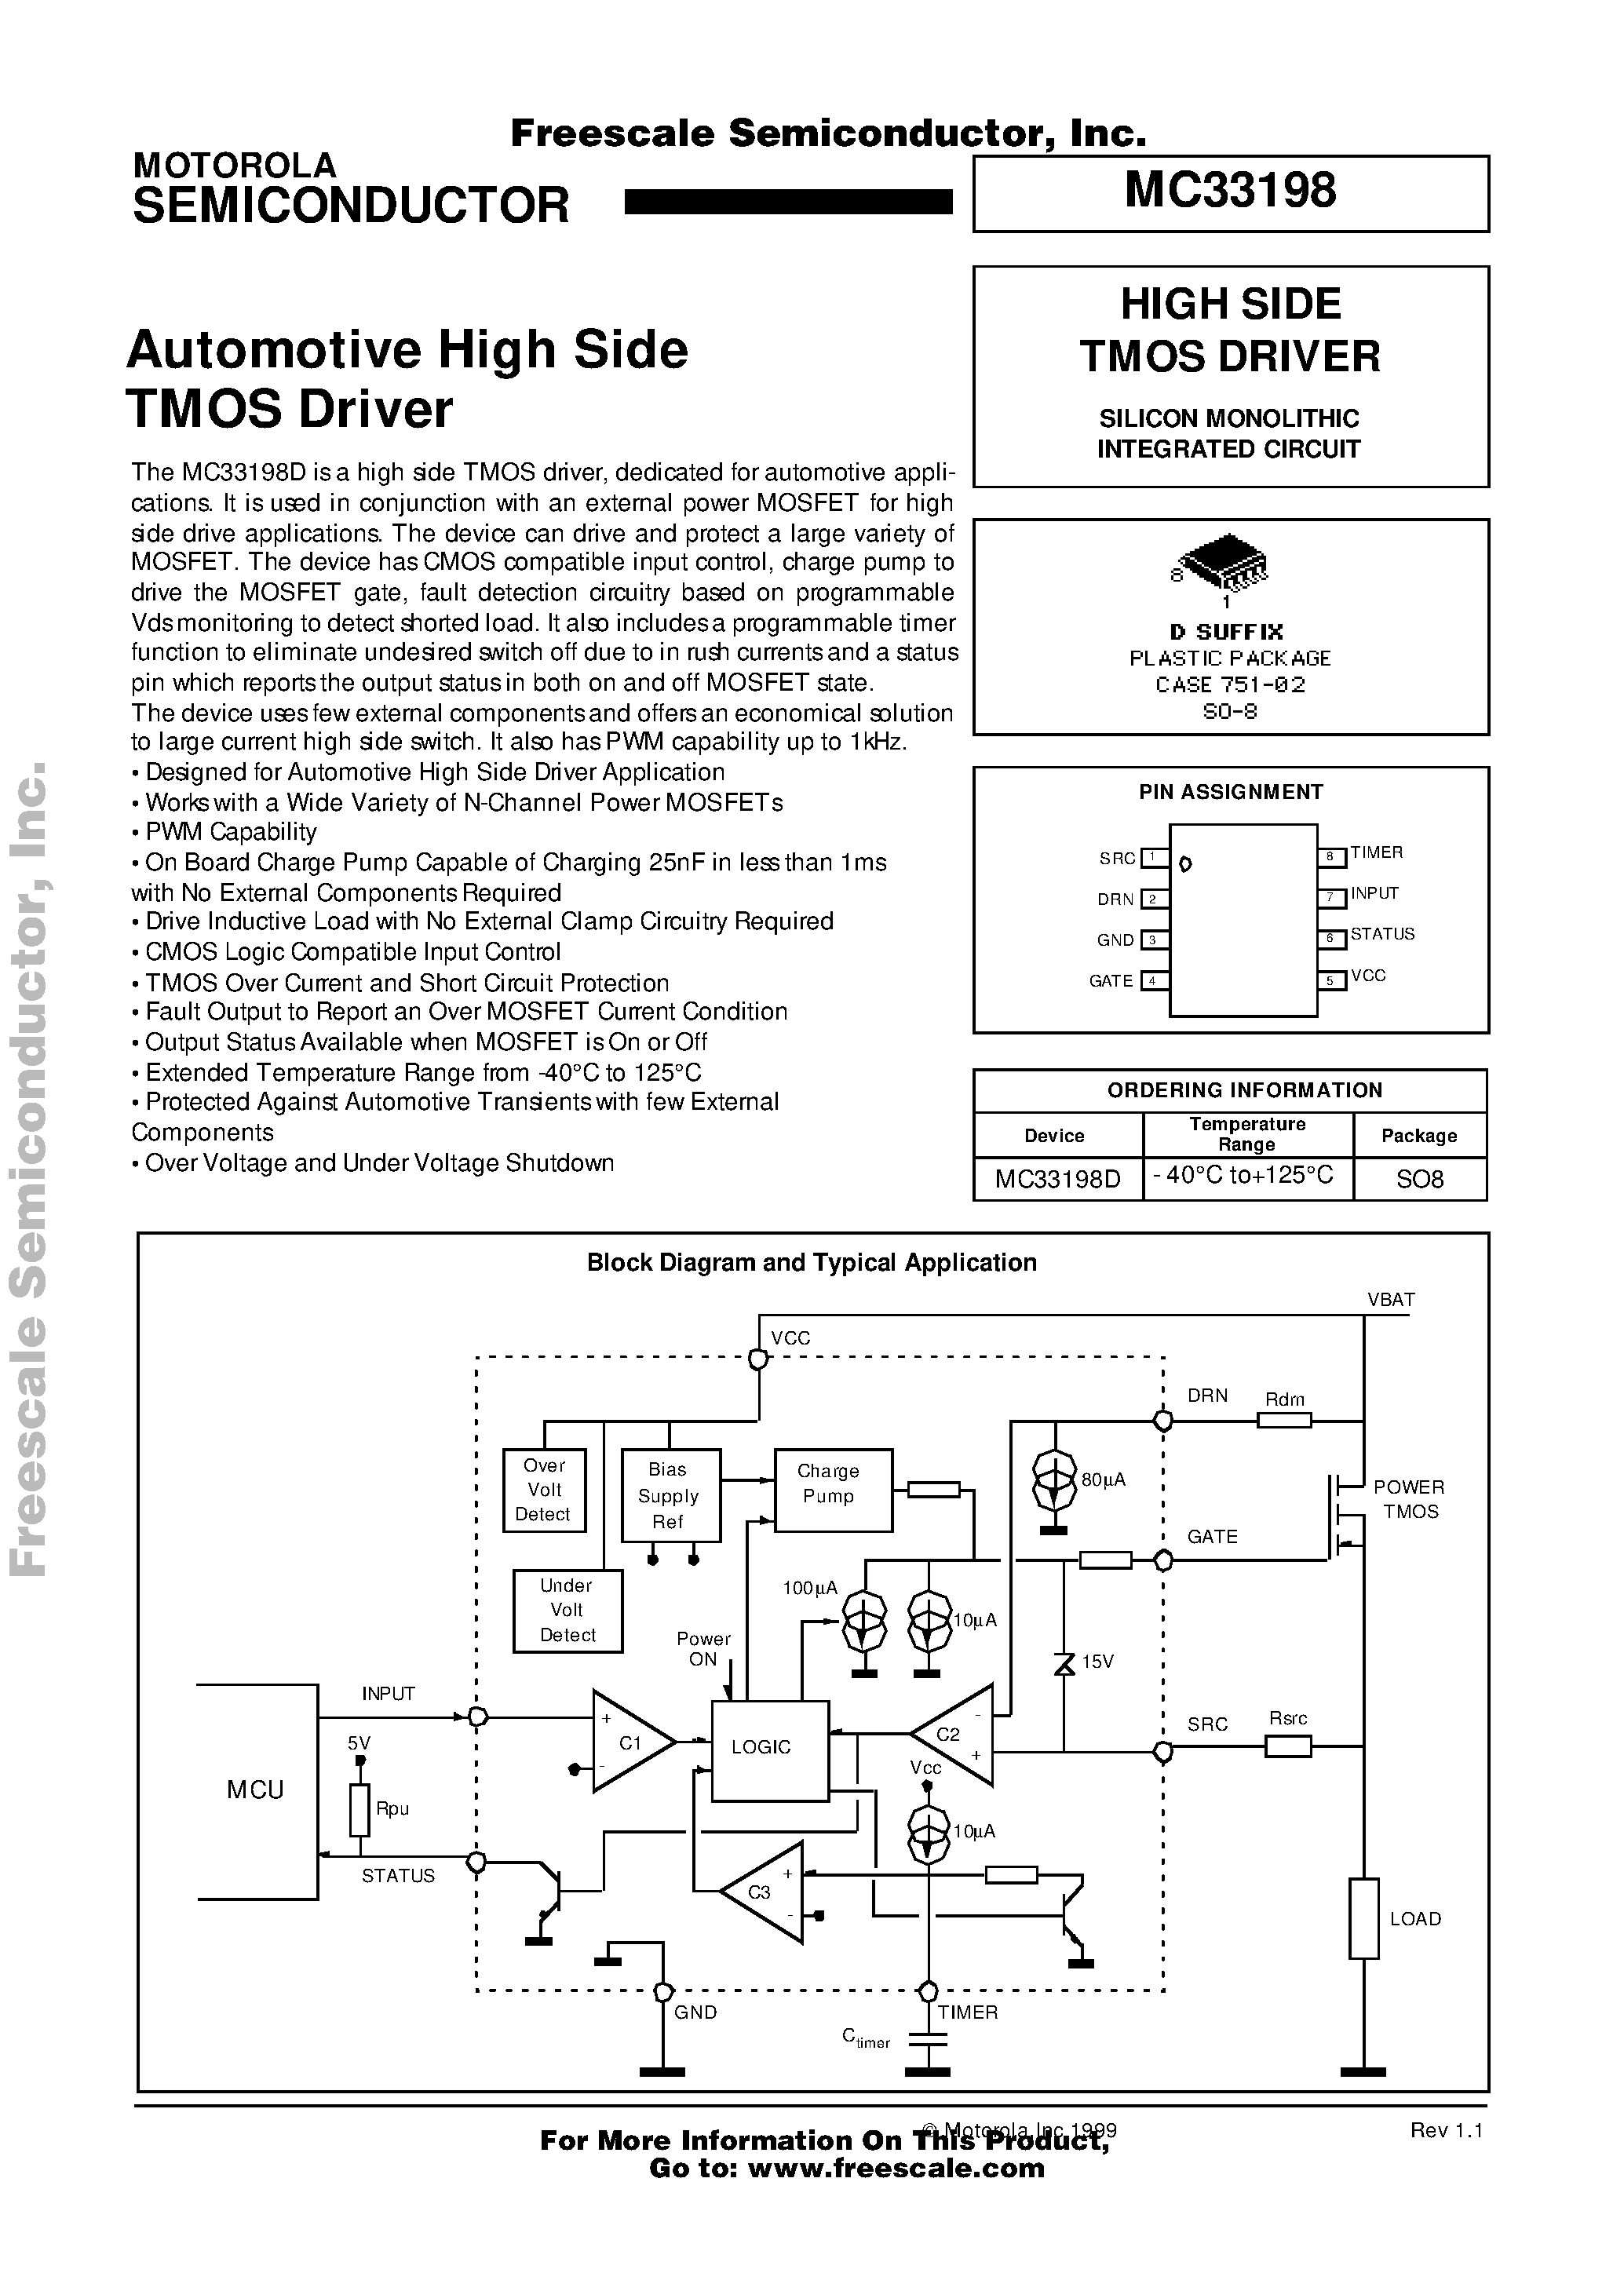 Даташит MC33198 - Automotive High Side TMOS Driver страница 1